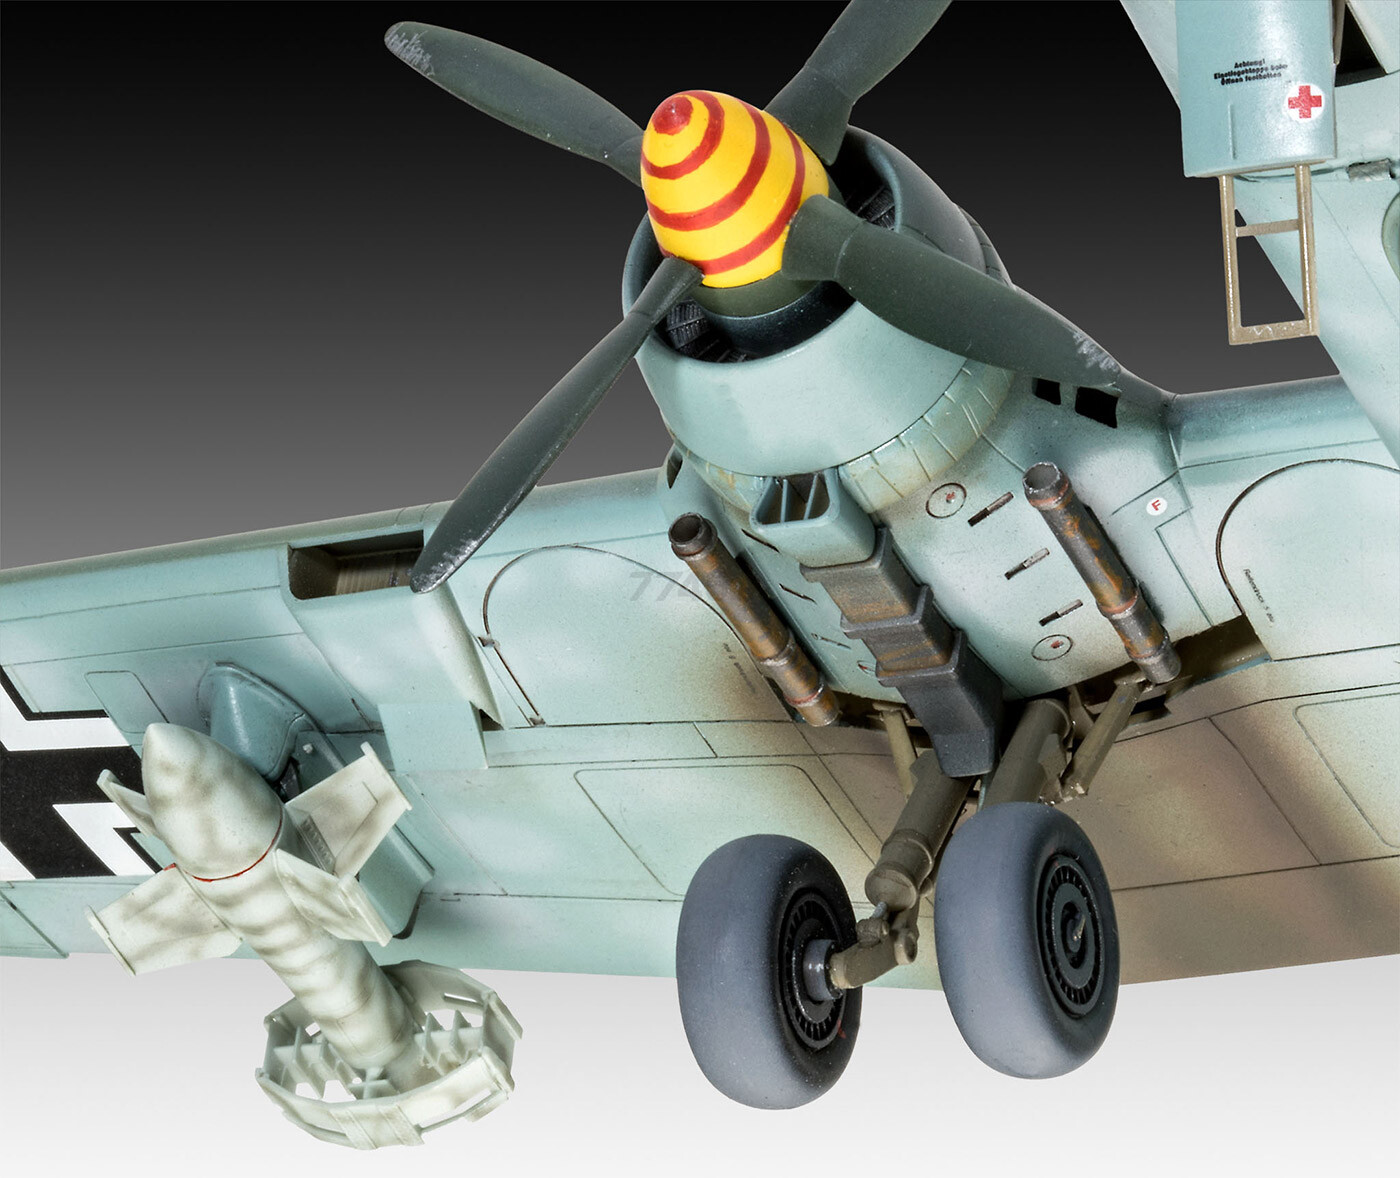 Сборная модель REVELL Немецкий тяжелый бомбардировщик Heinkel He177 A-5 Greif 1:72 (3913) - Фото 5